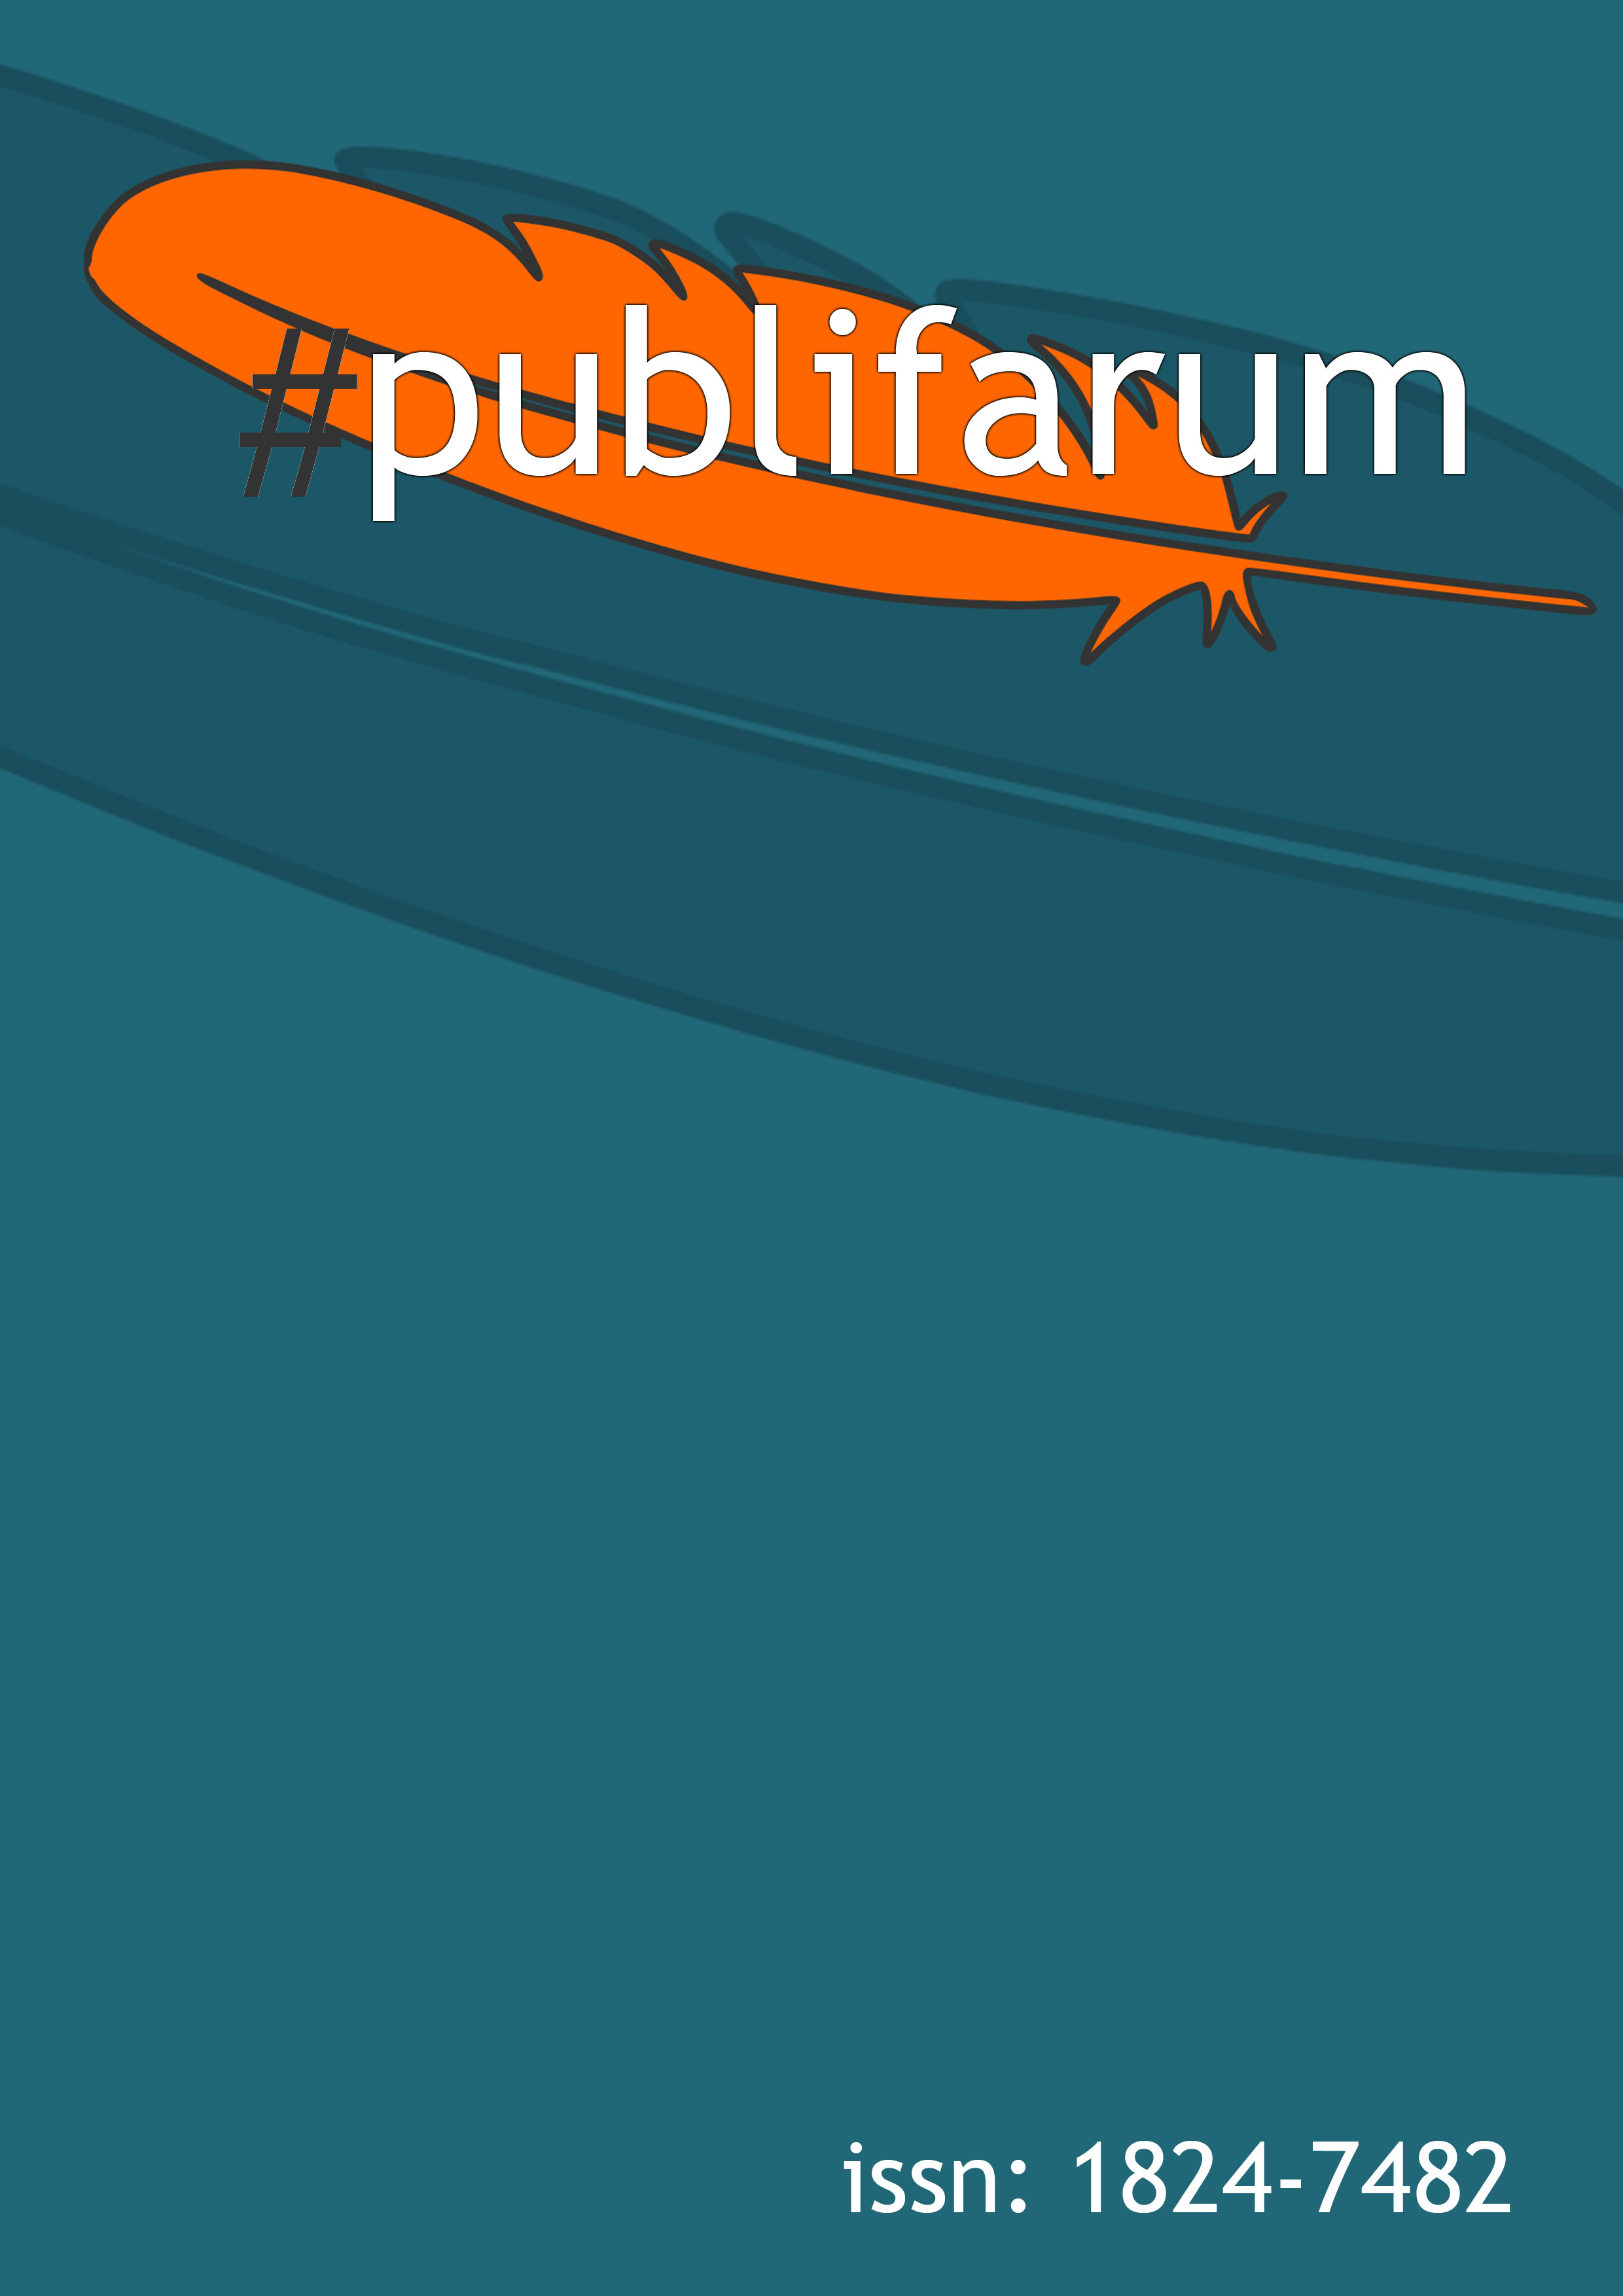 publifarum magazine cover